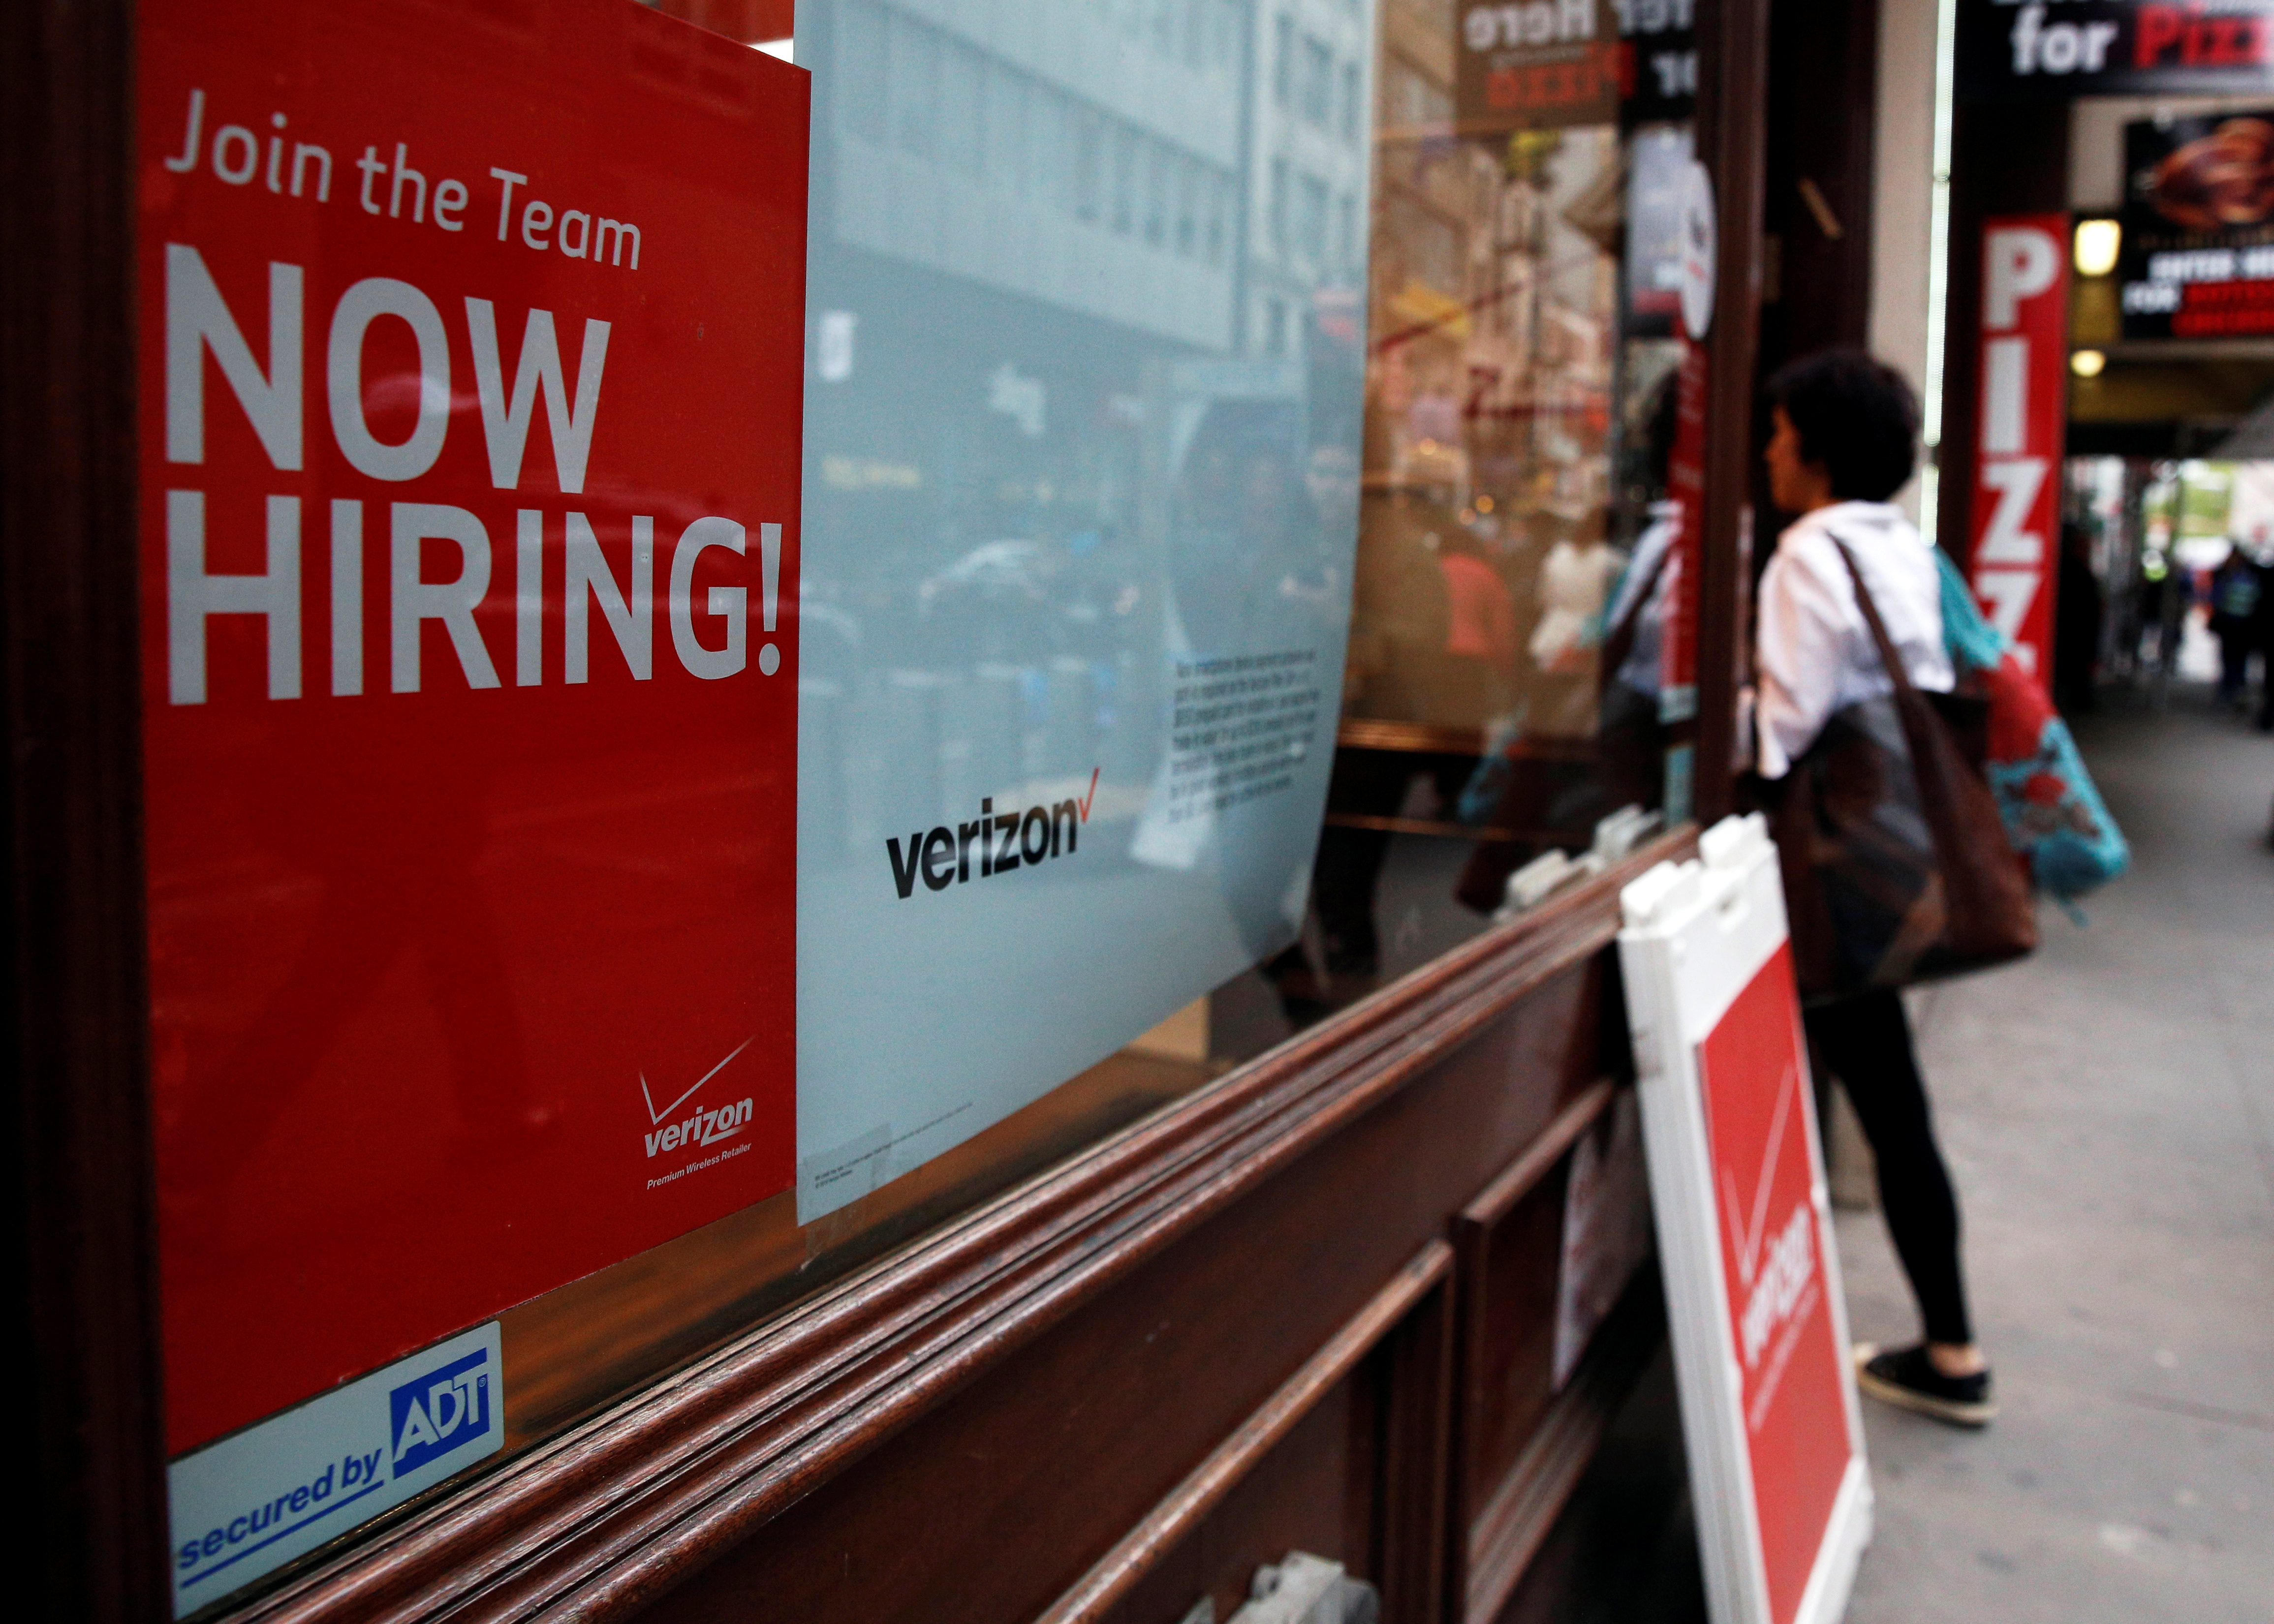 米新規失業保険申請、23.1万件に増加 労働市場の緩和示唆 - ロイター (Reuters Japan)